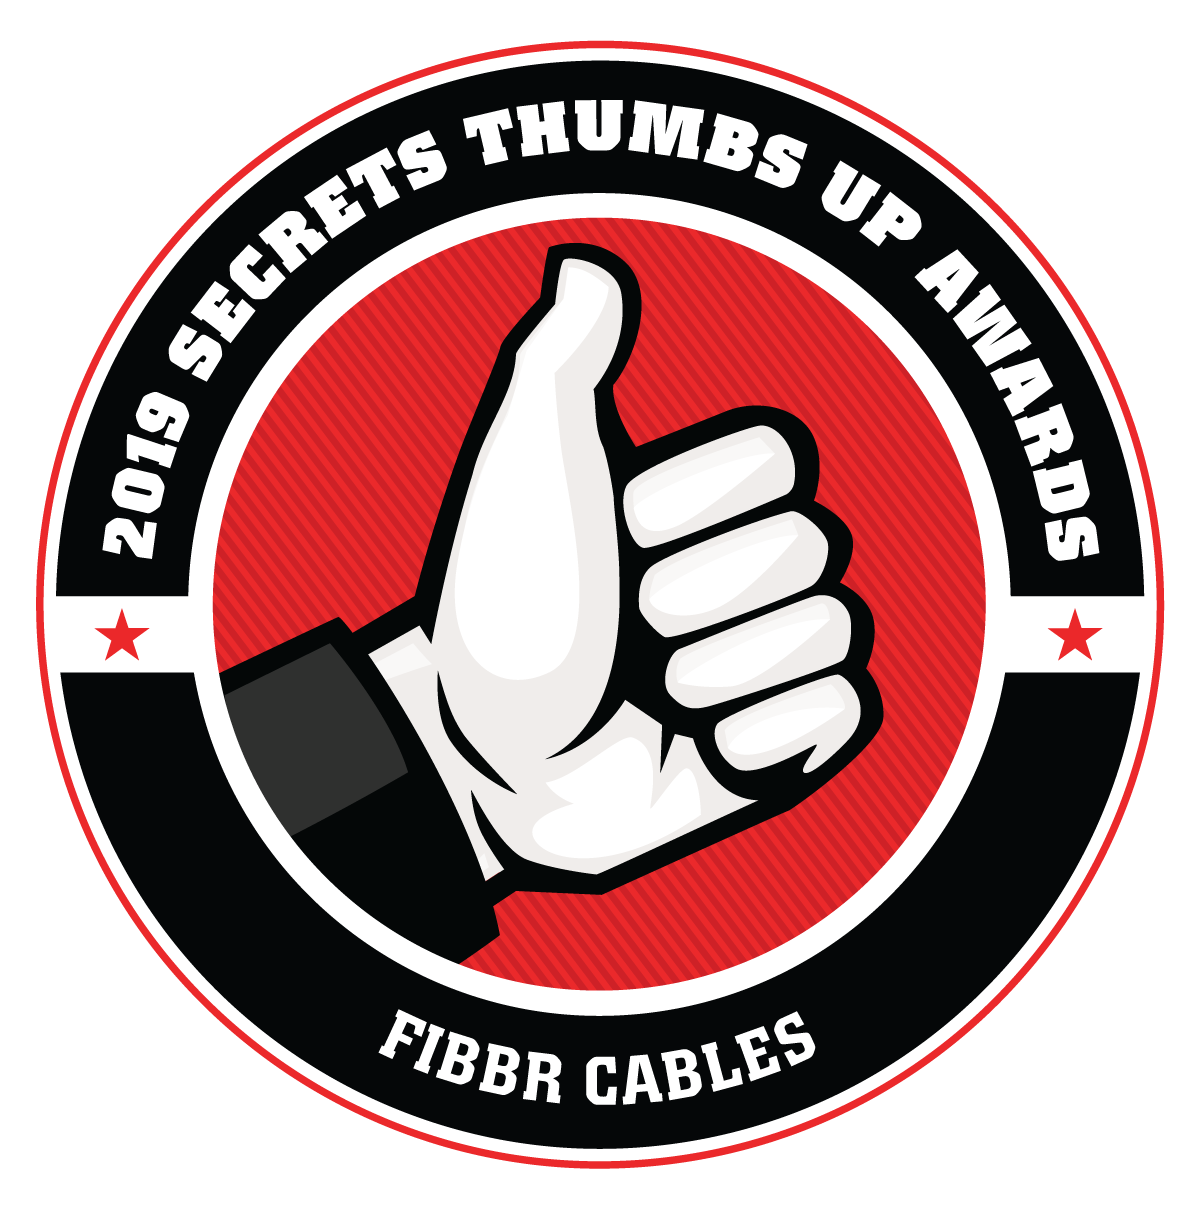 FIBBR cables